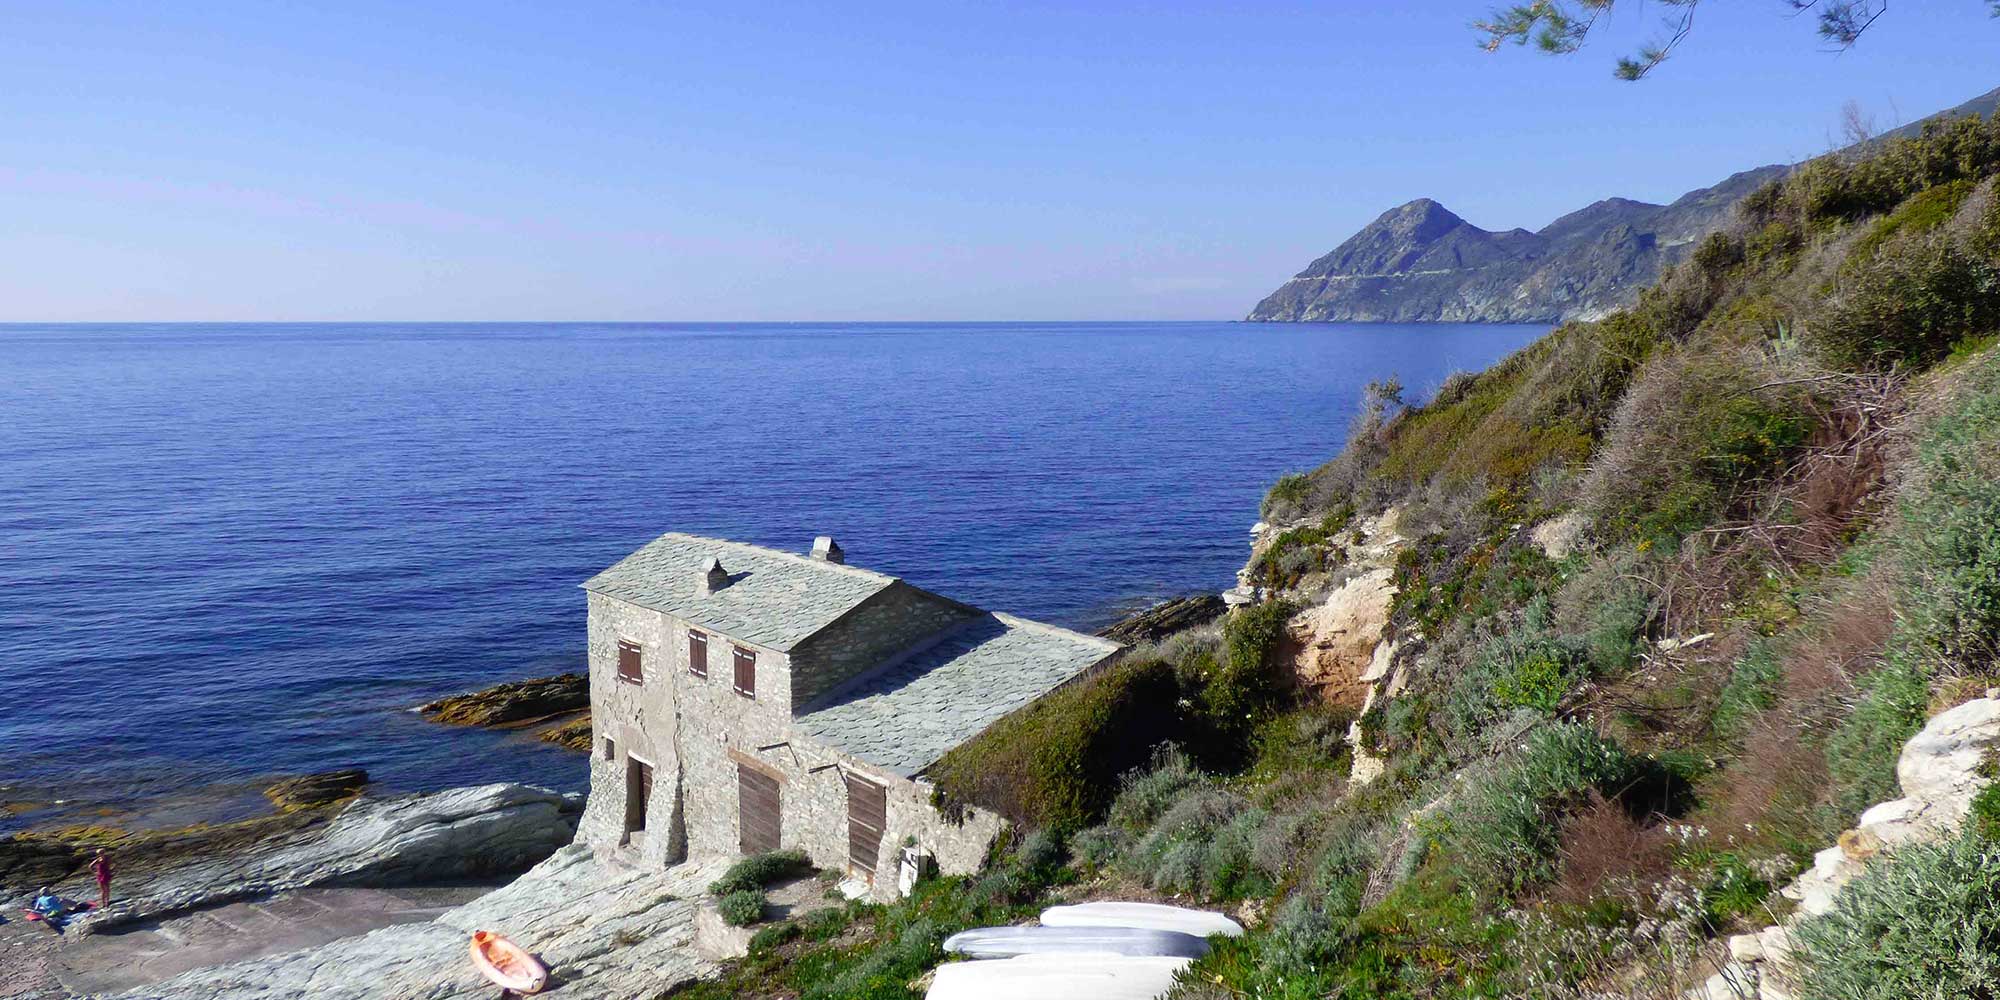 Ferienwohnung in Korsika - kleines Haus (Studio) für 2 Personen Füße im Wasser